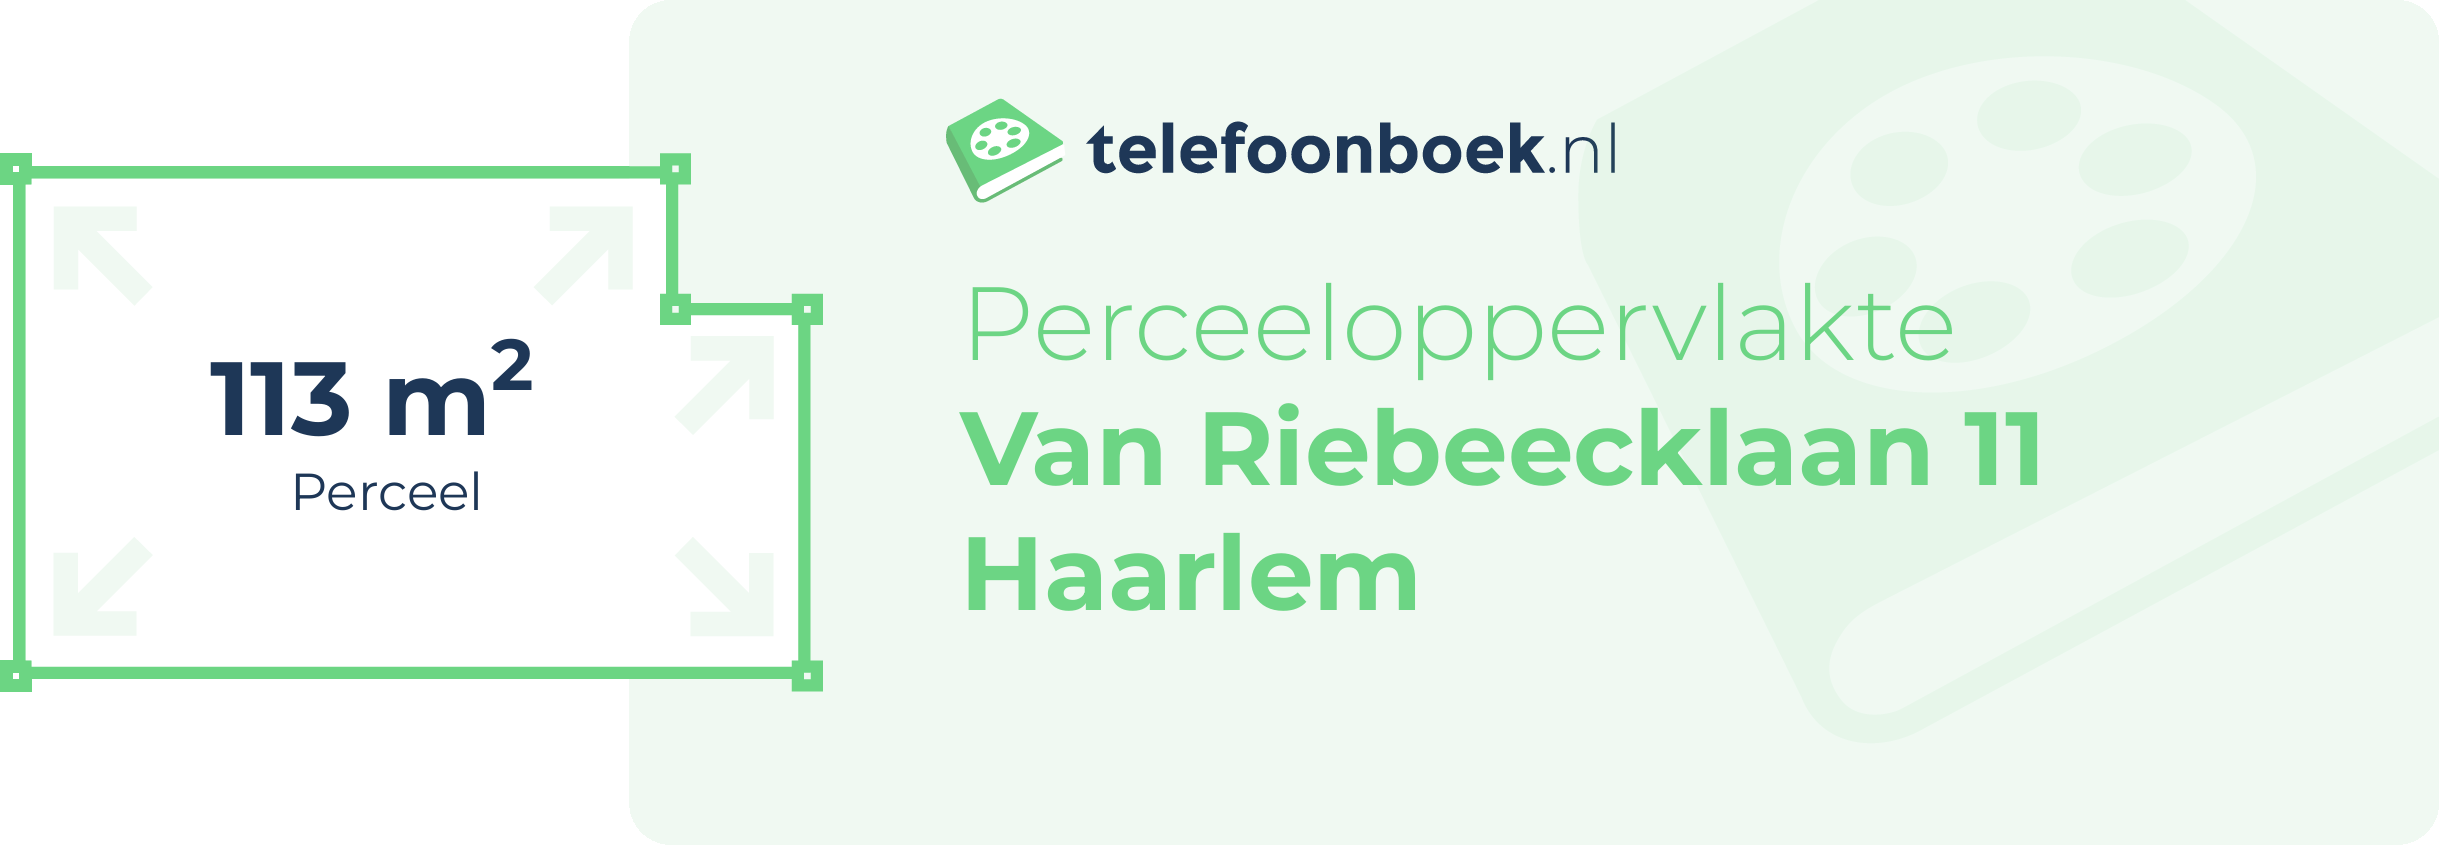 Perceeloppervlakte Van Riebeecklaan 11 Haarlem